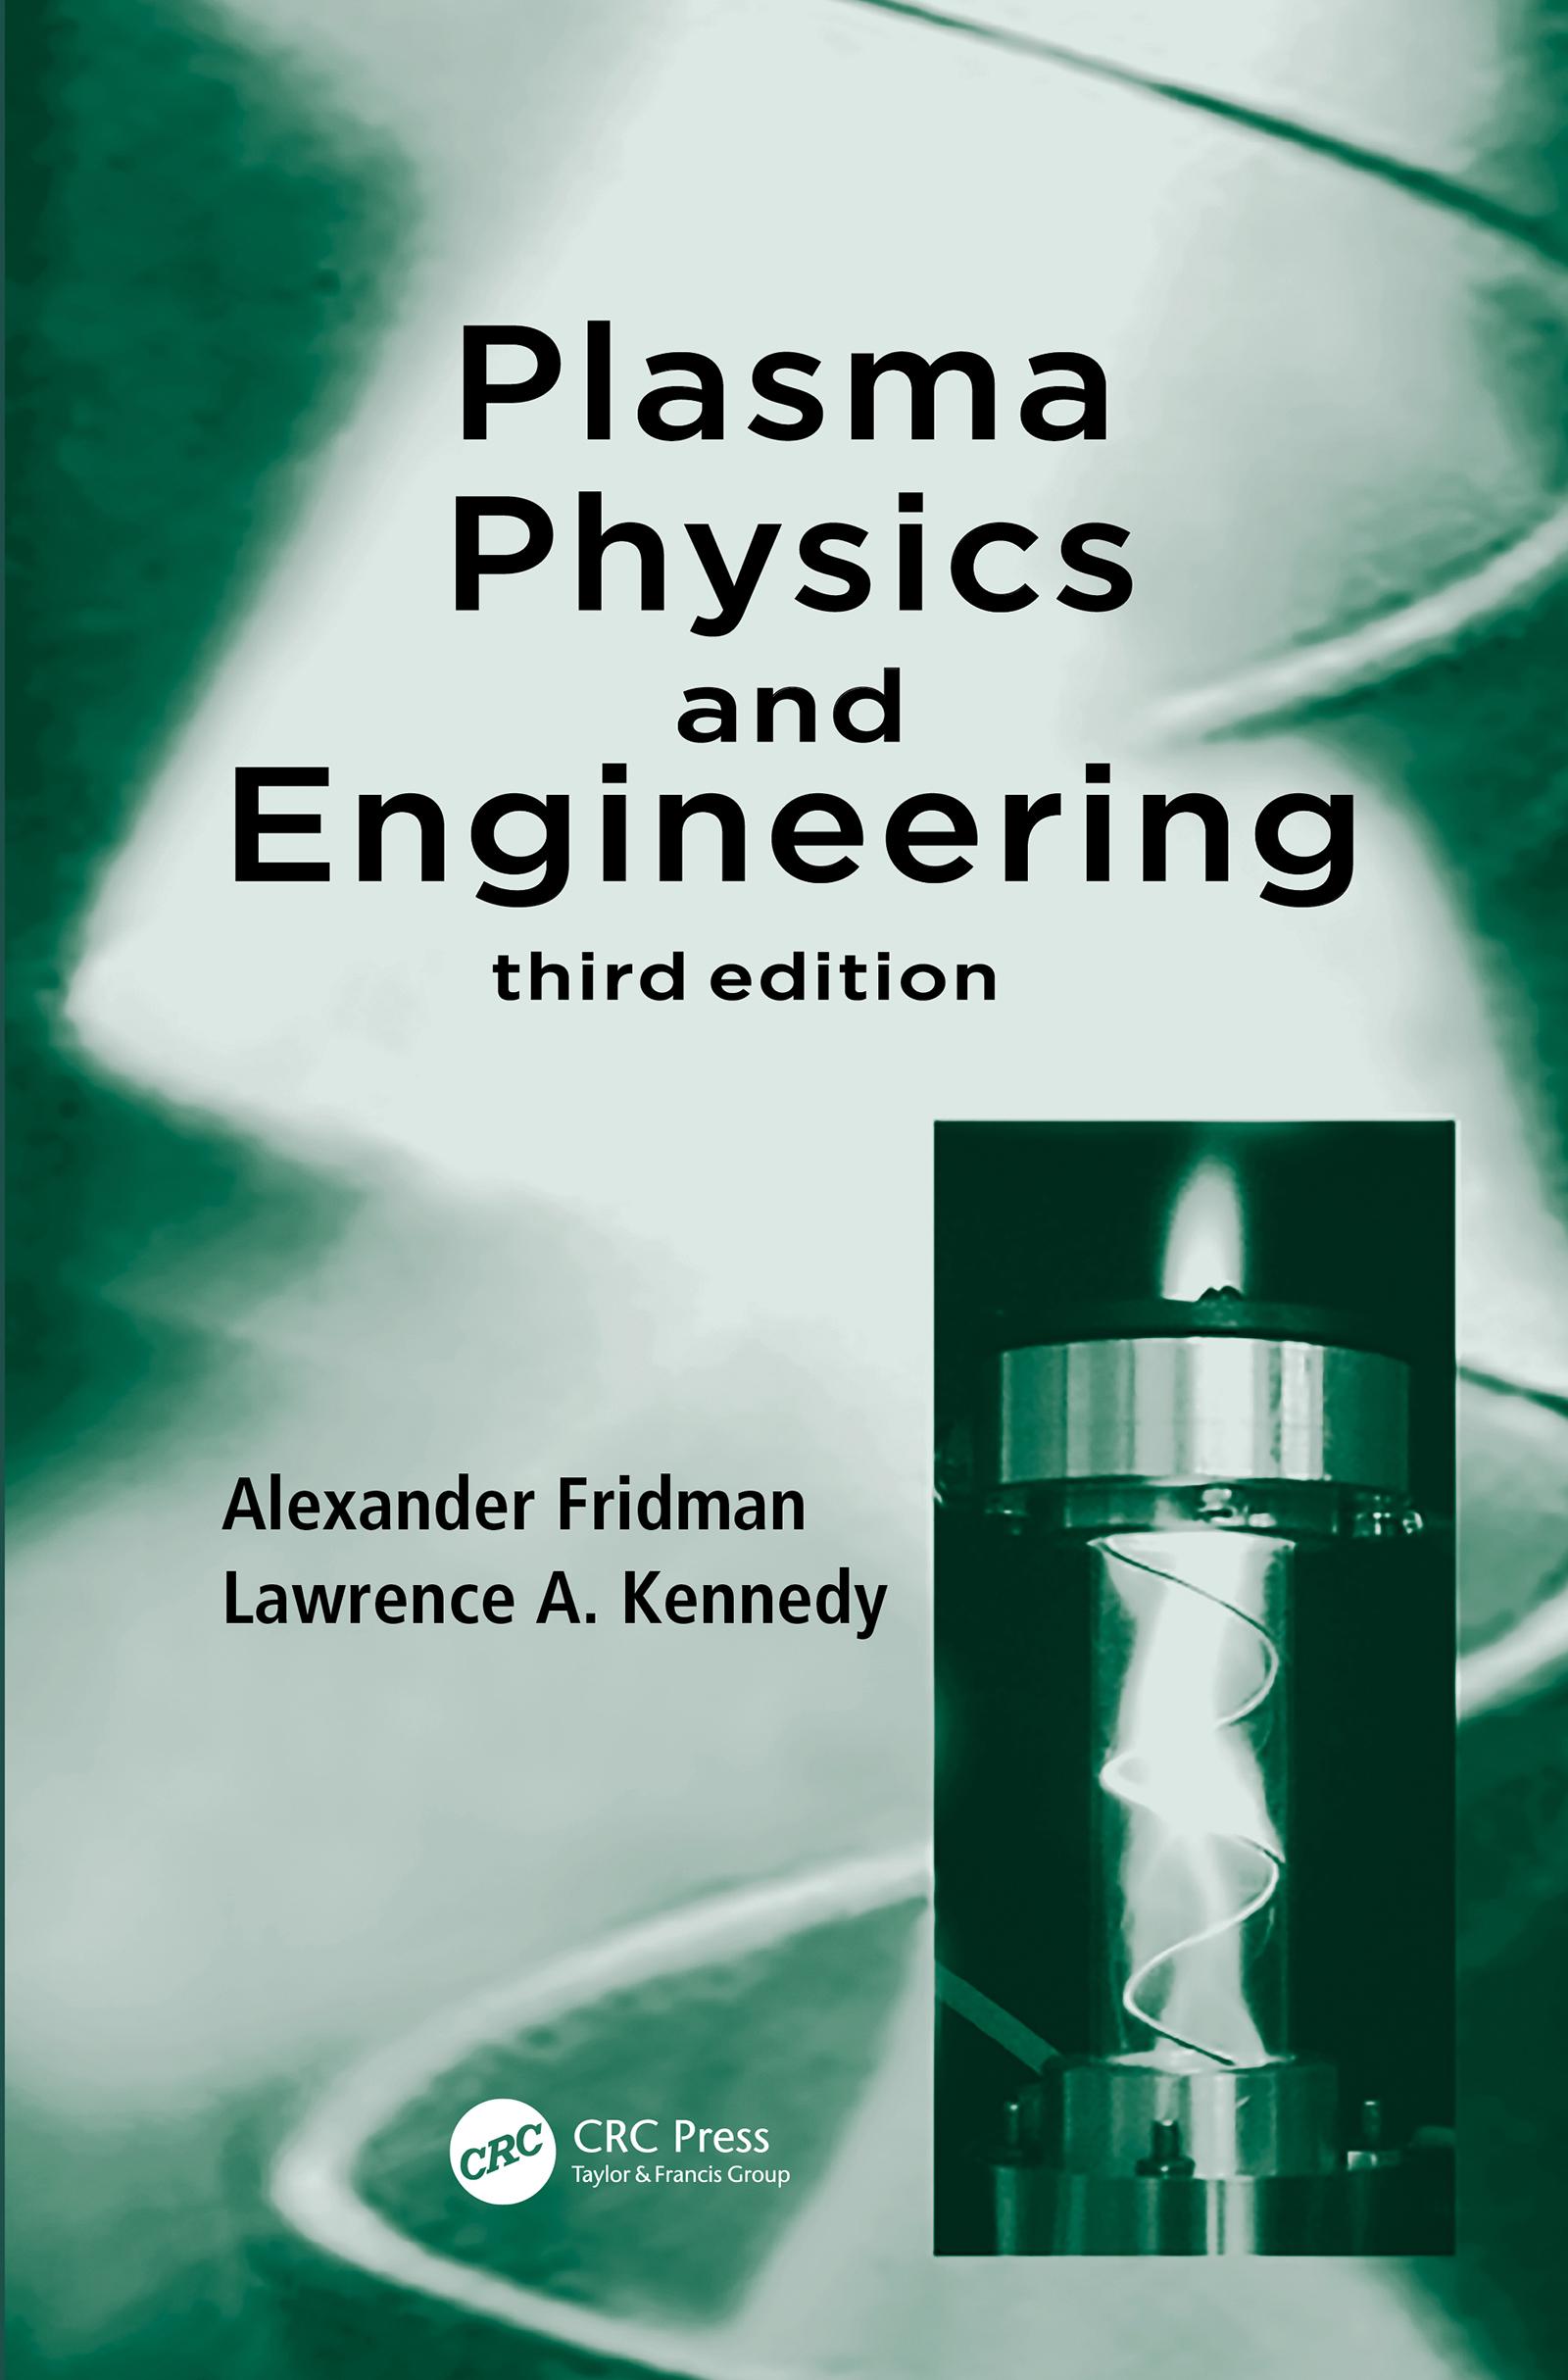 Alexander Fridman  Drexel Engineering